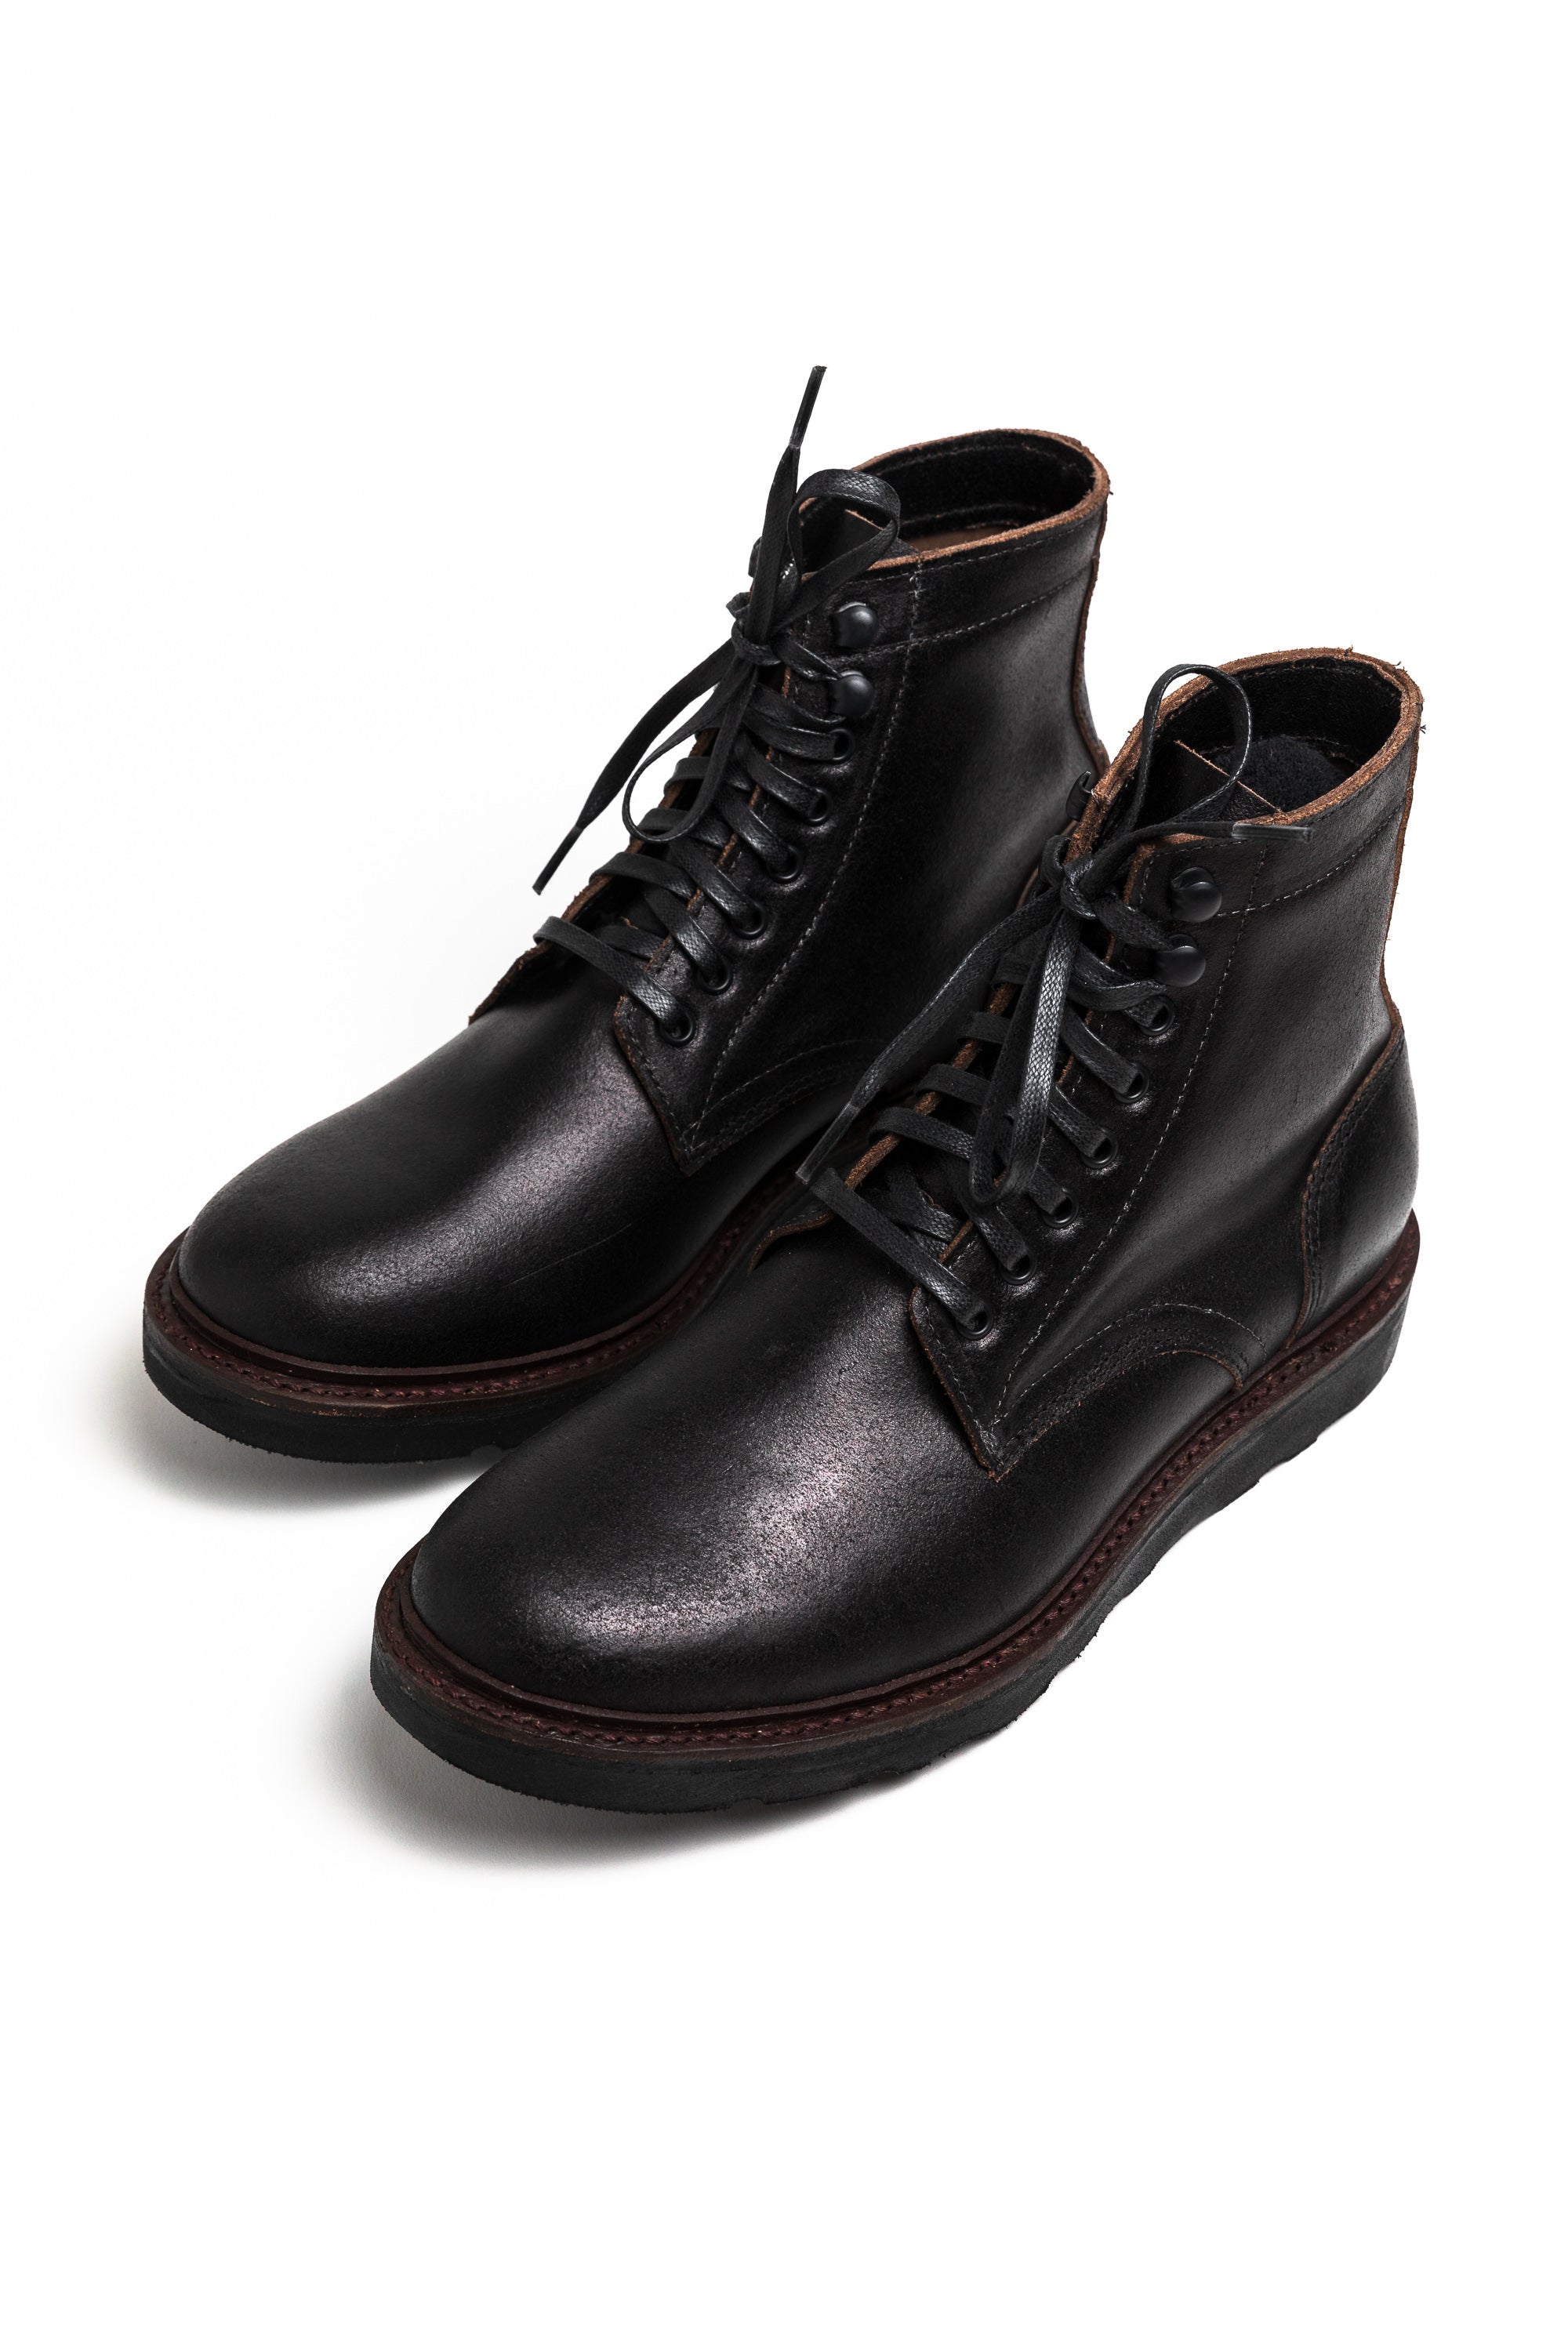 Oak Street Bootmakers x ButterScotch - Double Black Deckard Boot